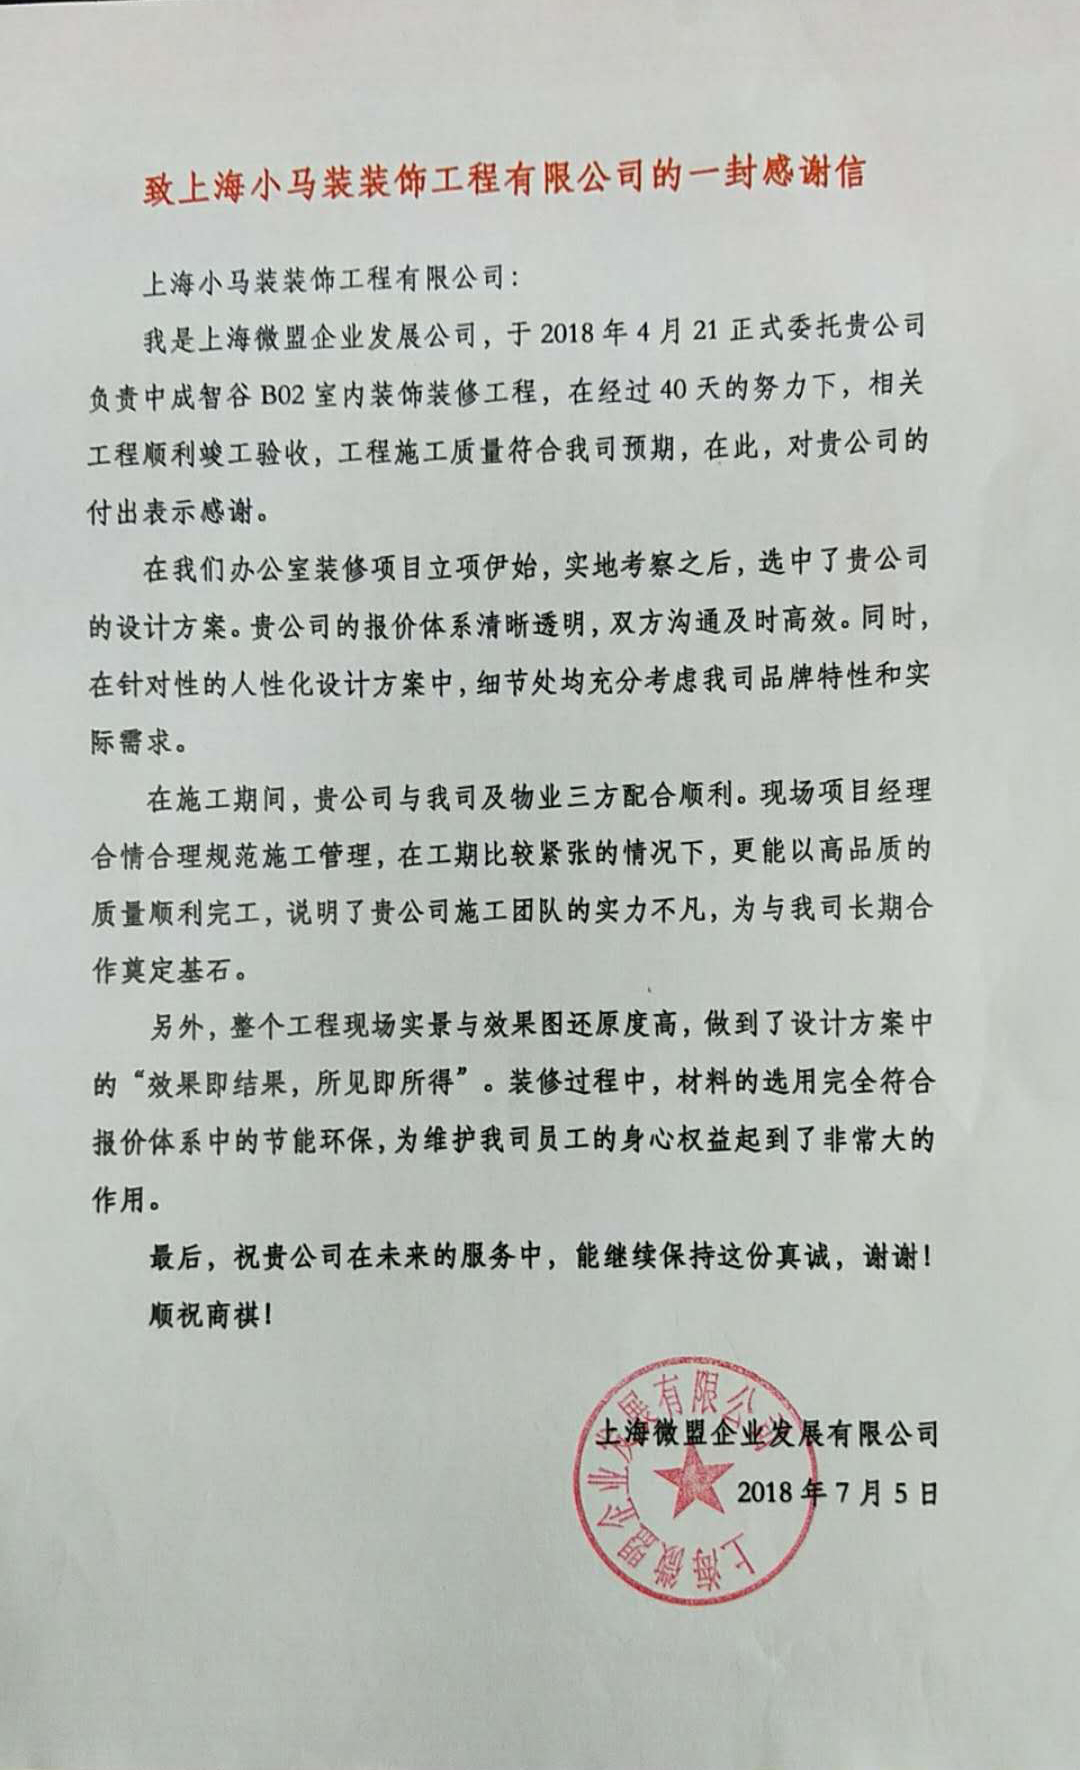 致上海小马装装饰工程有限公司的一封感谢信（图片版）